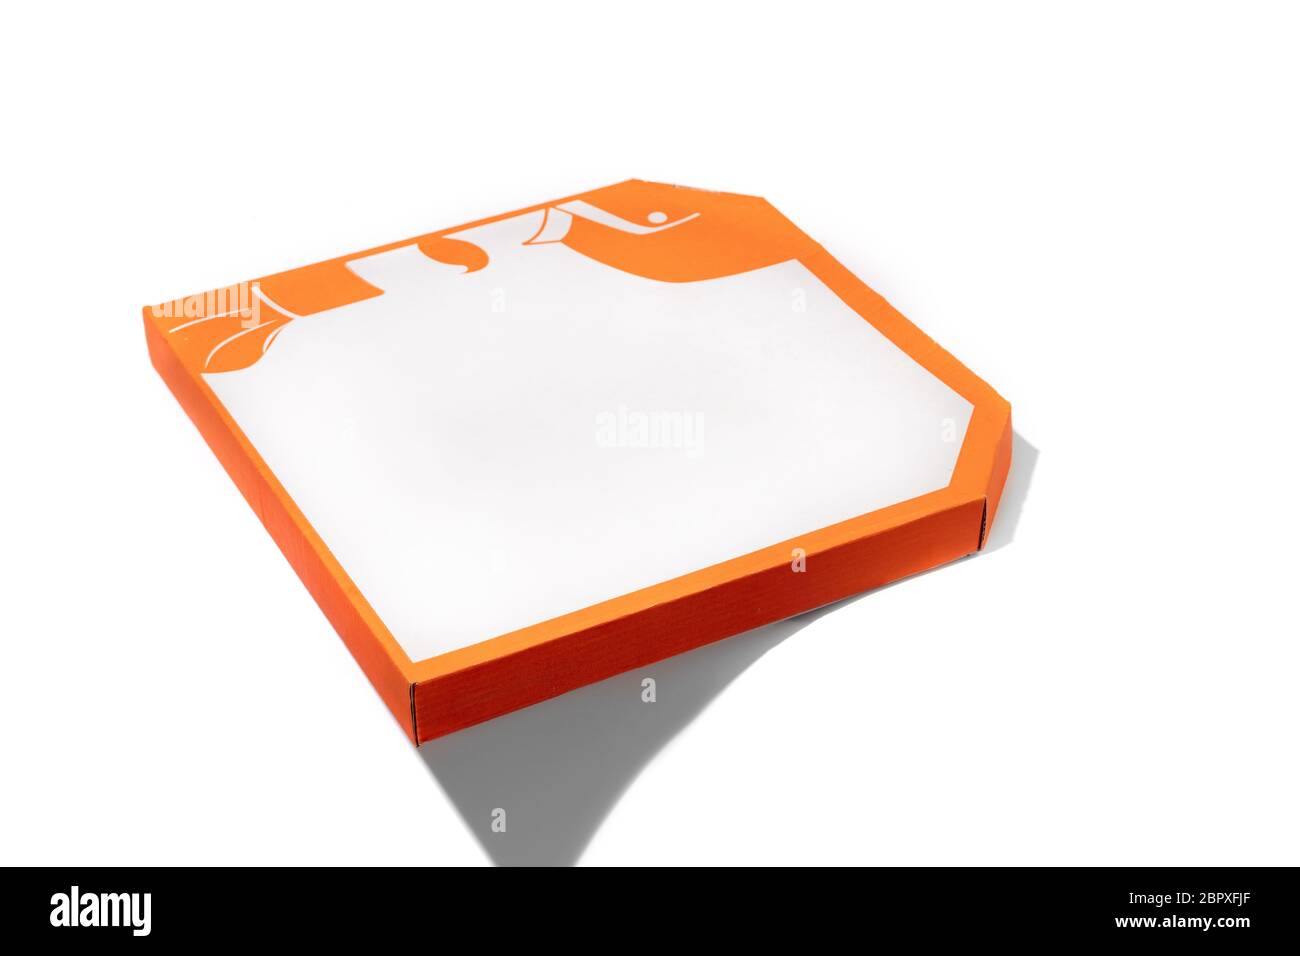 Primer plano de caja de cartón naranja para pizza aislada sobre fondo blanco de estudio con copyspace. Comida rápida y tradicional y nutrición, embalaje de entrega, caja para el envío, transporte. Foto de stock